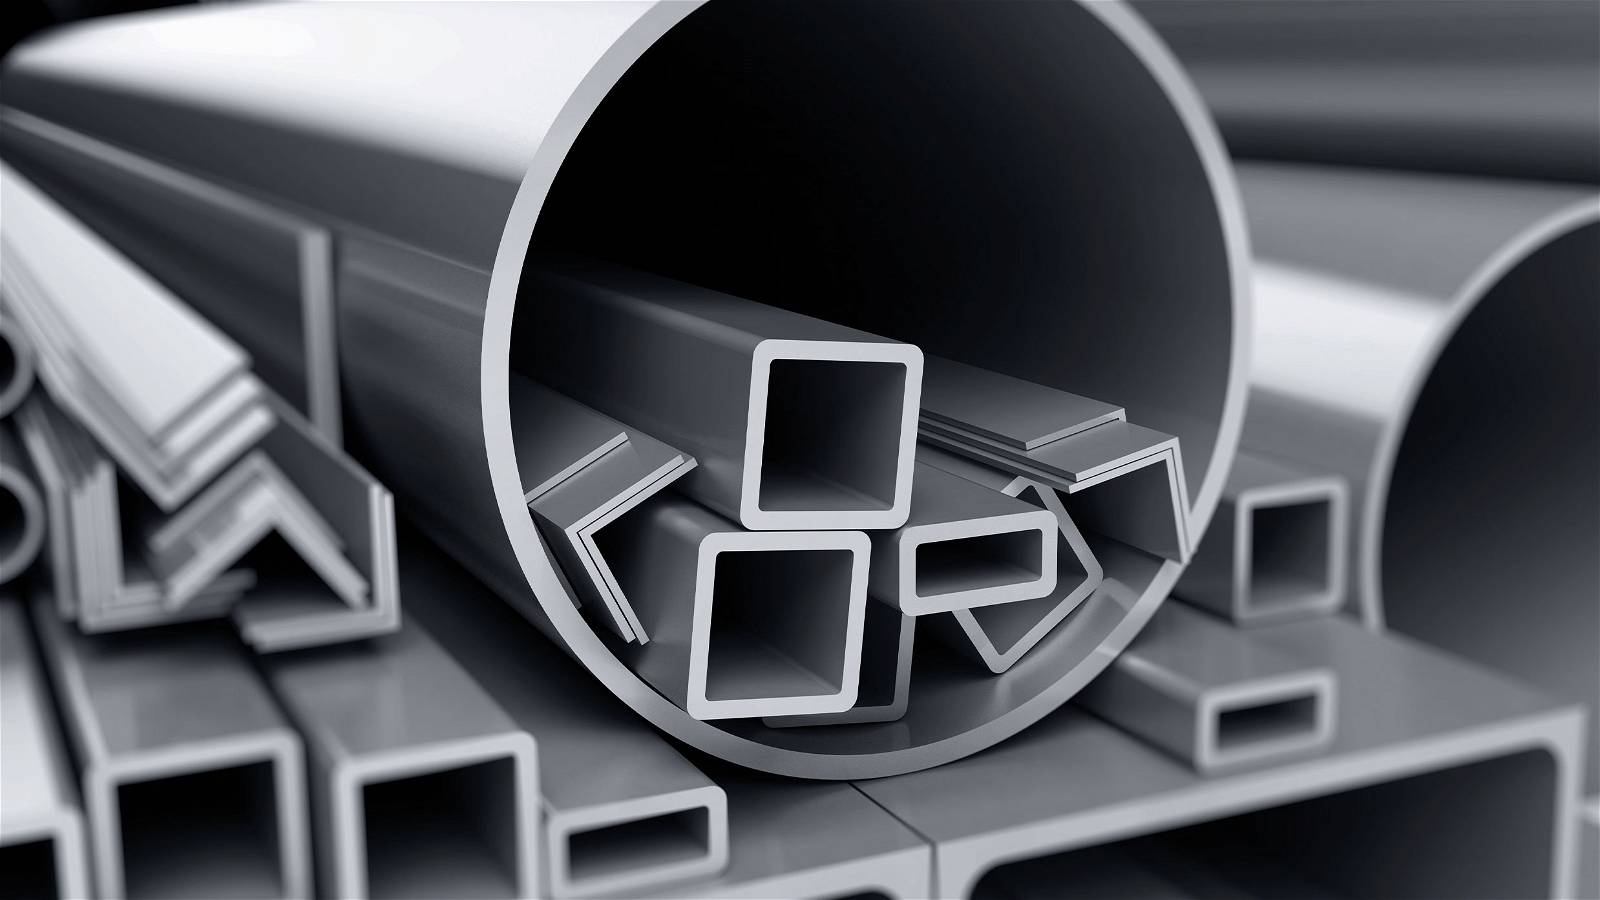 “Geniş ürün portföyümüz ile paslanmaz çelik sektörünün vazgeçilmez markası olacağız”